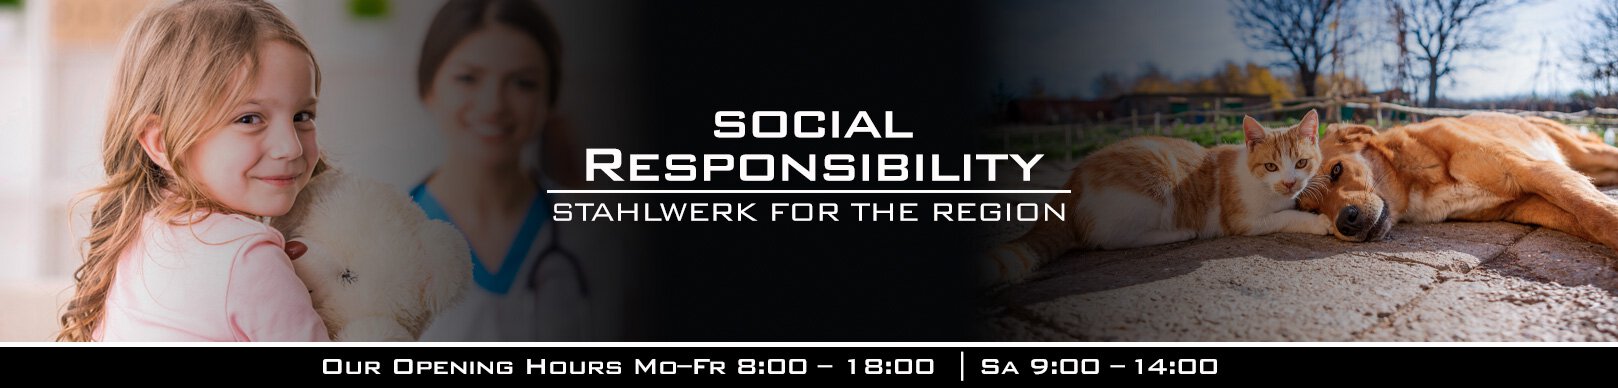 Social responsibility - STAHLWERK for the region